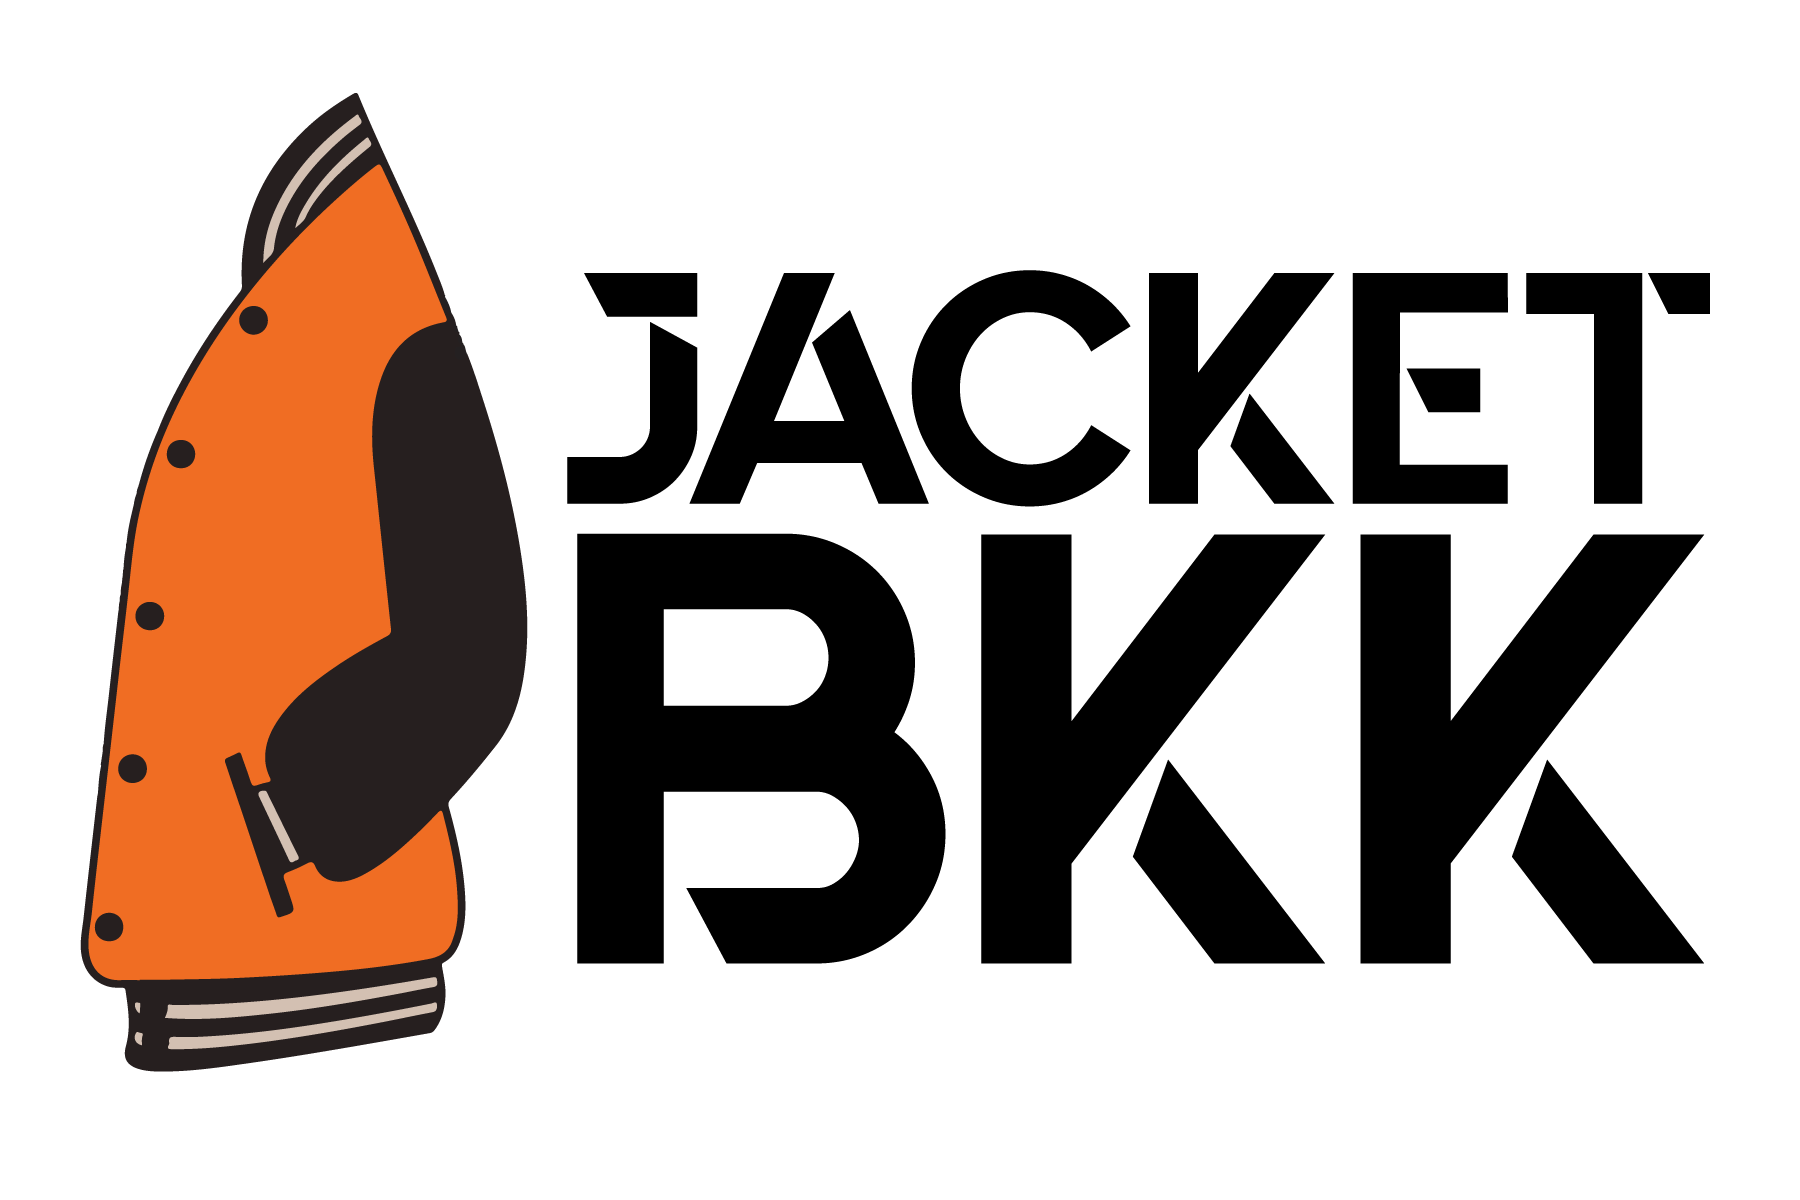 JACKETBKK